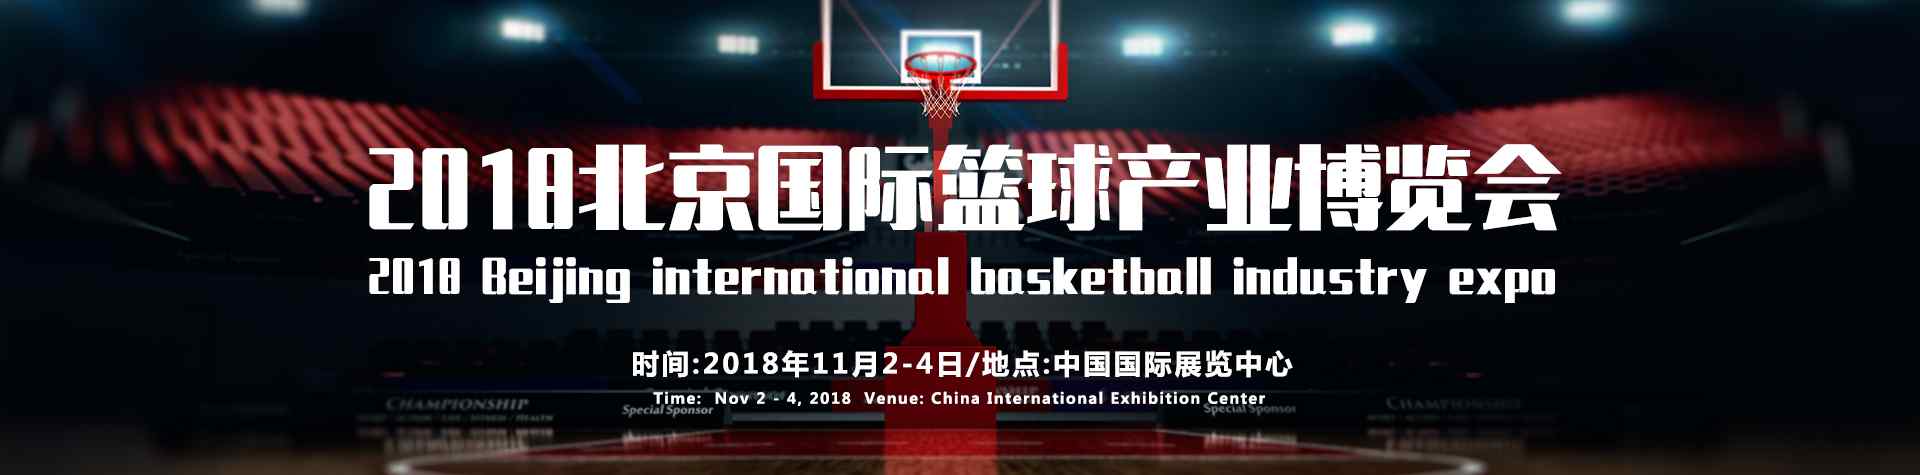 北京篮球 2018北京国际篮球产业博览会